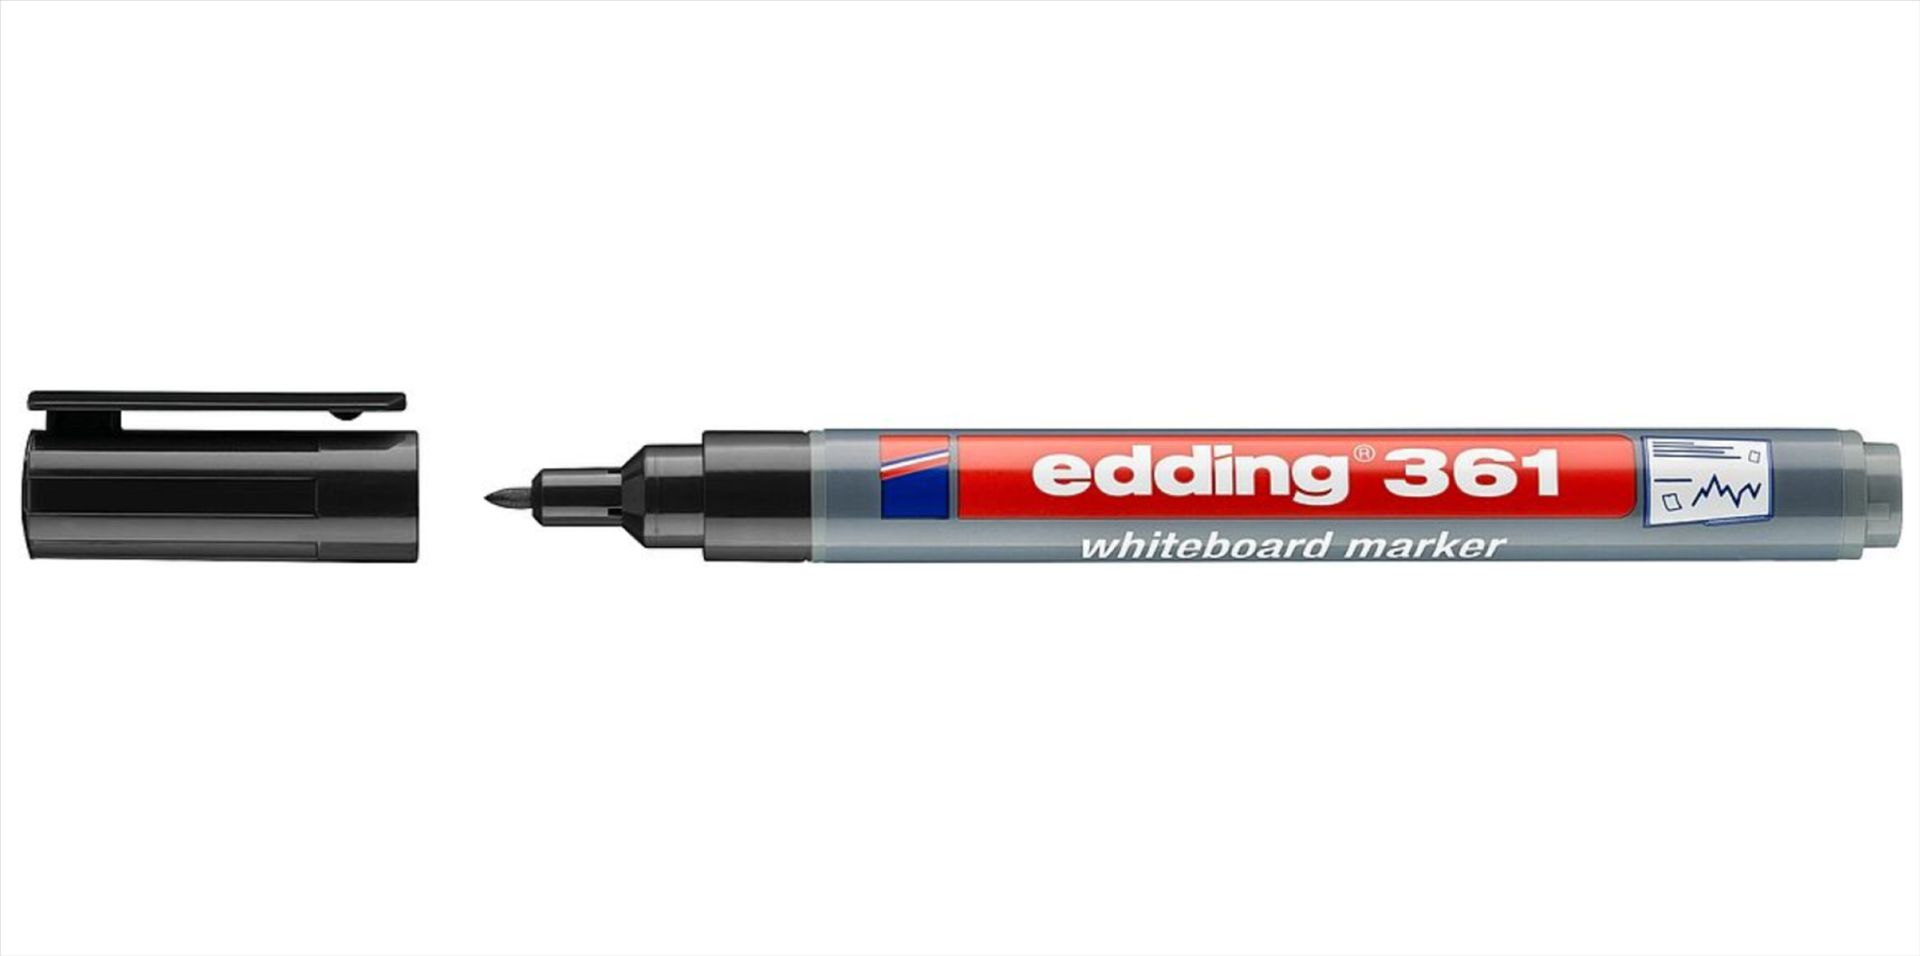 Black Whiteboard Marker Pen Edding 361 x200 RRP £120 - Image 3 of 3